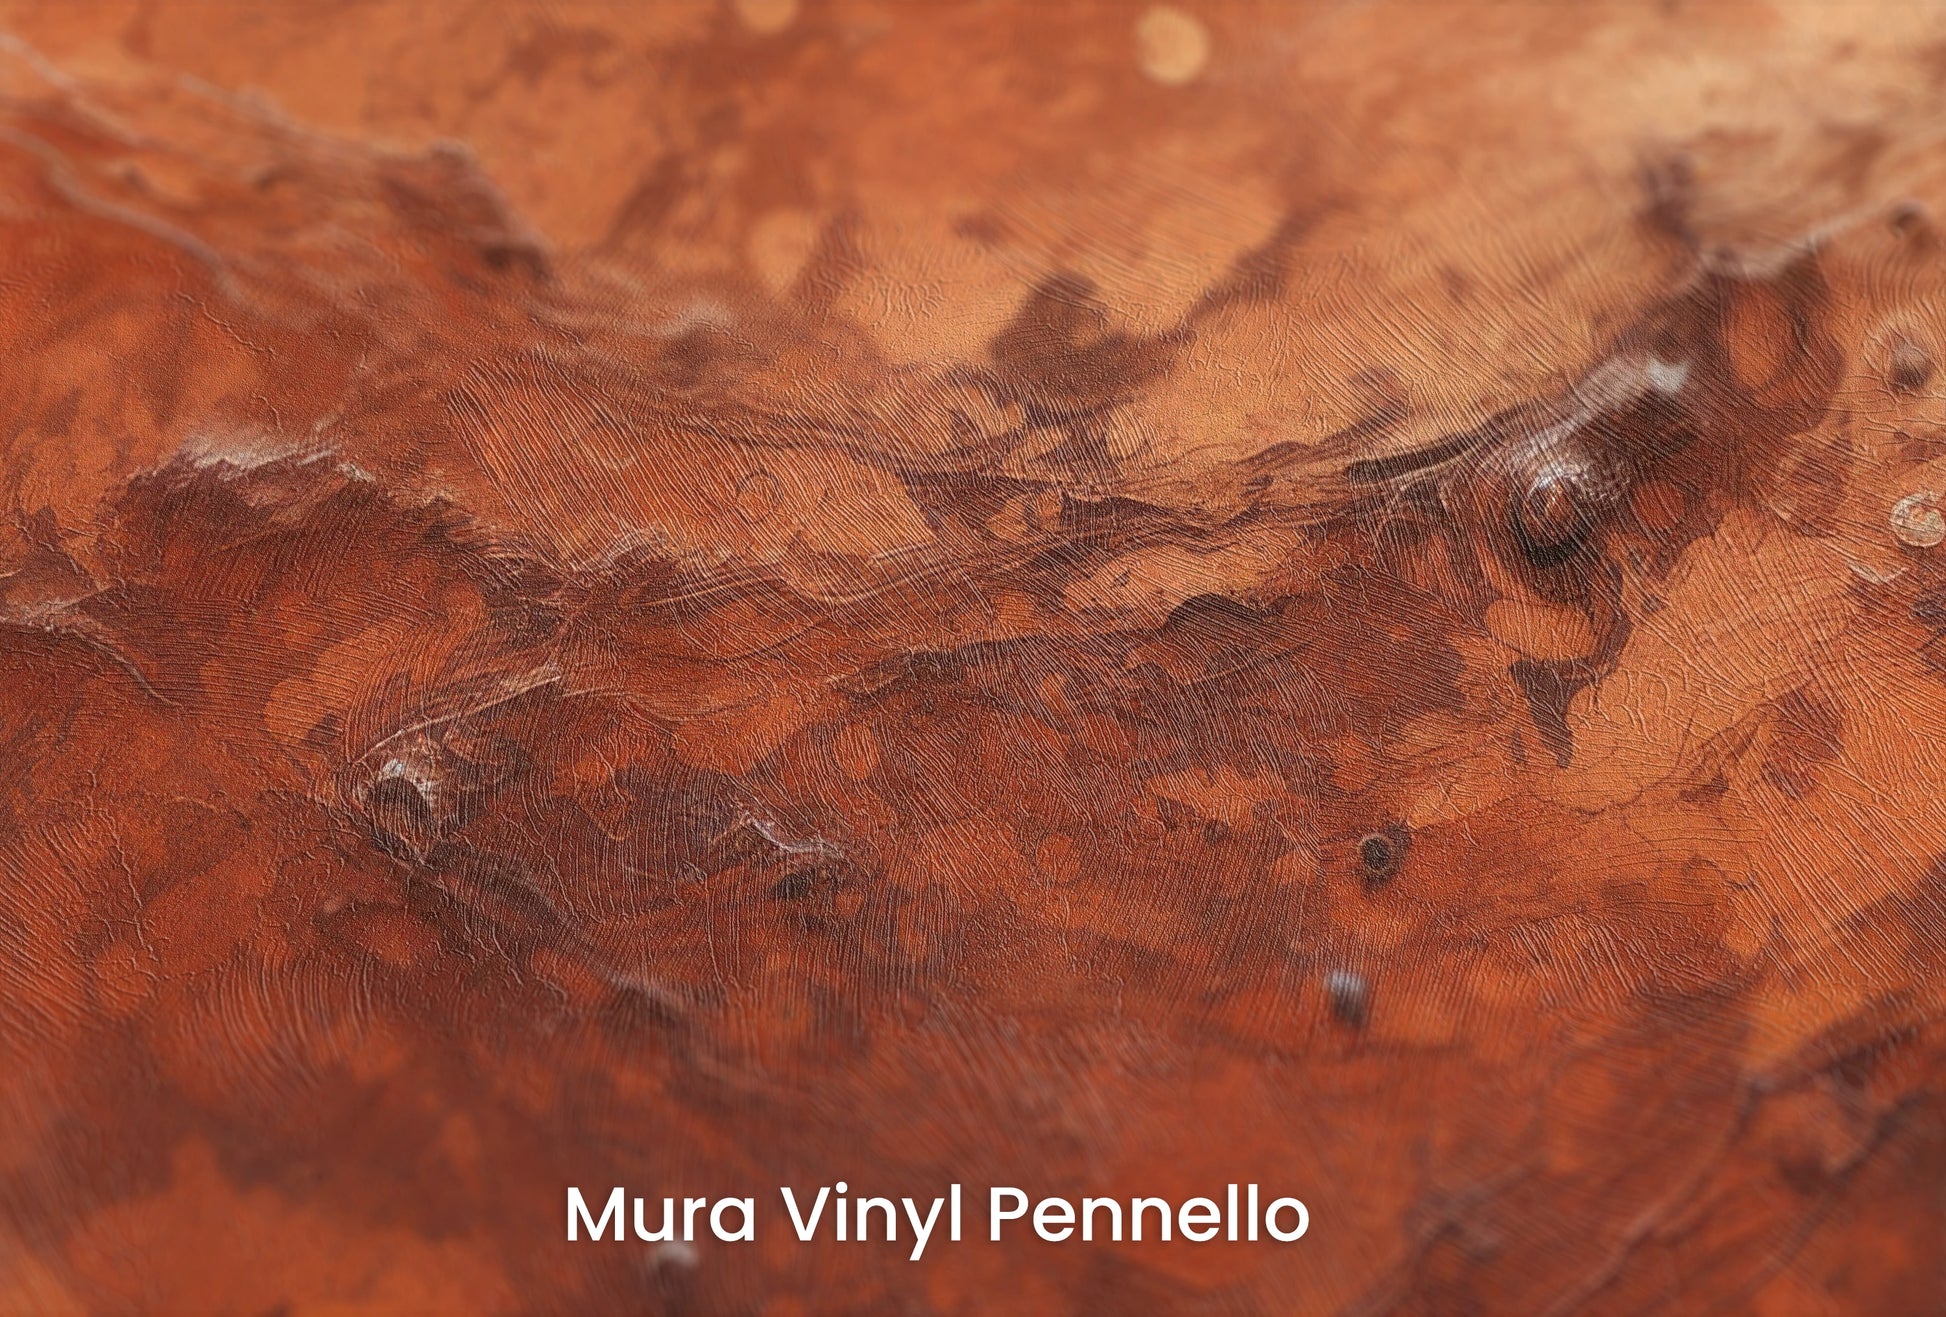 Zbliżenie na artystyczną fototapetę o nazwie Martian Dust na podłożu Mura Vinyl Pennello - faktura pociągnięć pędzla malarskiego.